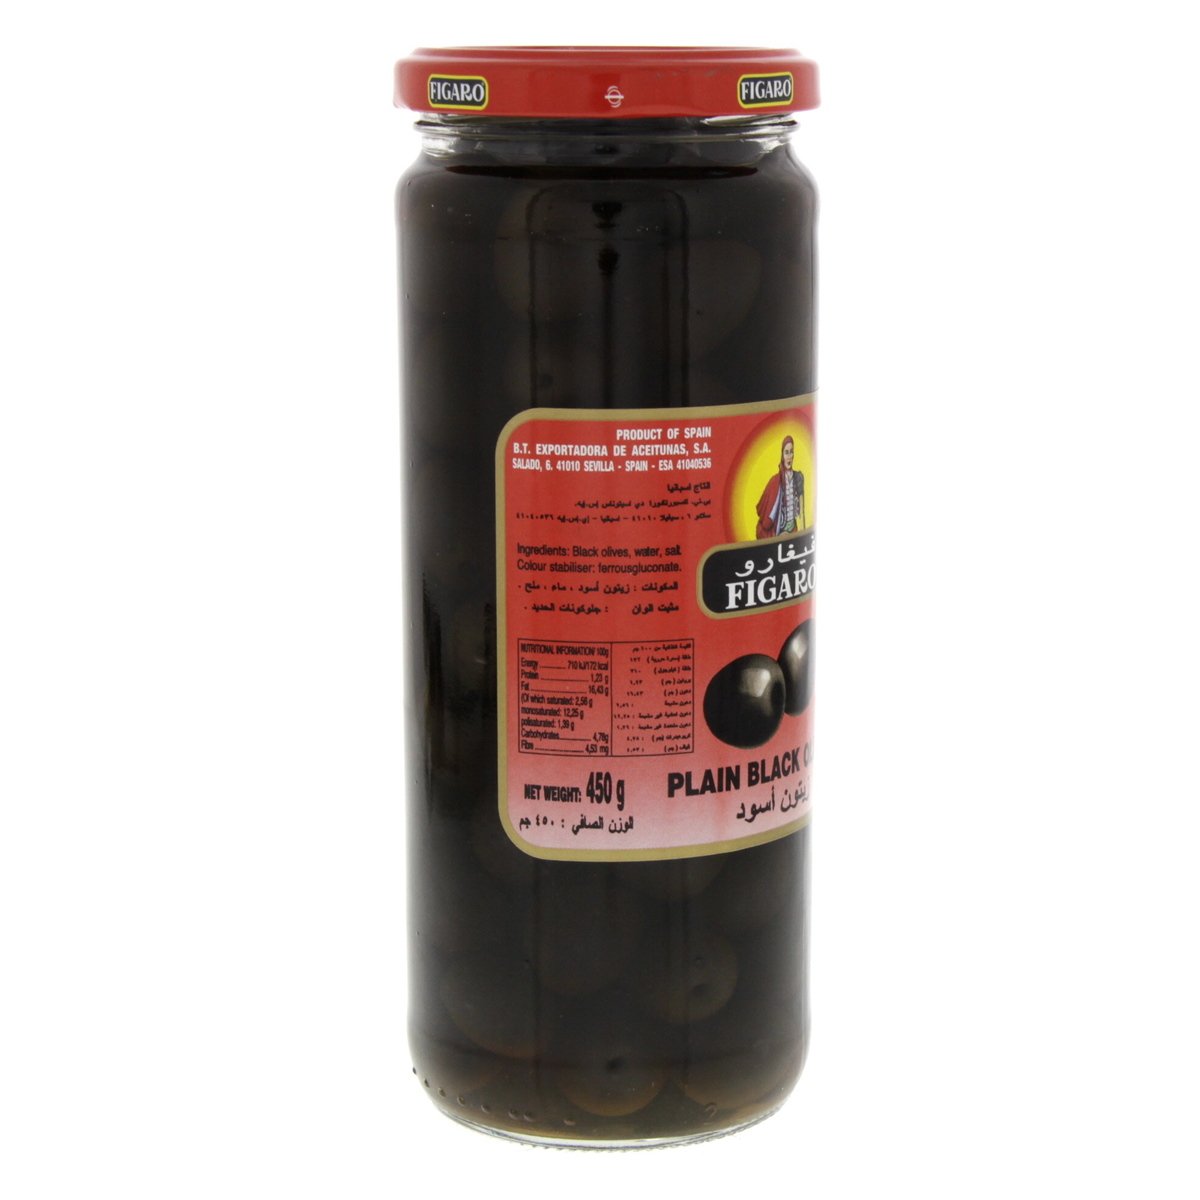 Figaro Plain Black Olives 270 g